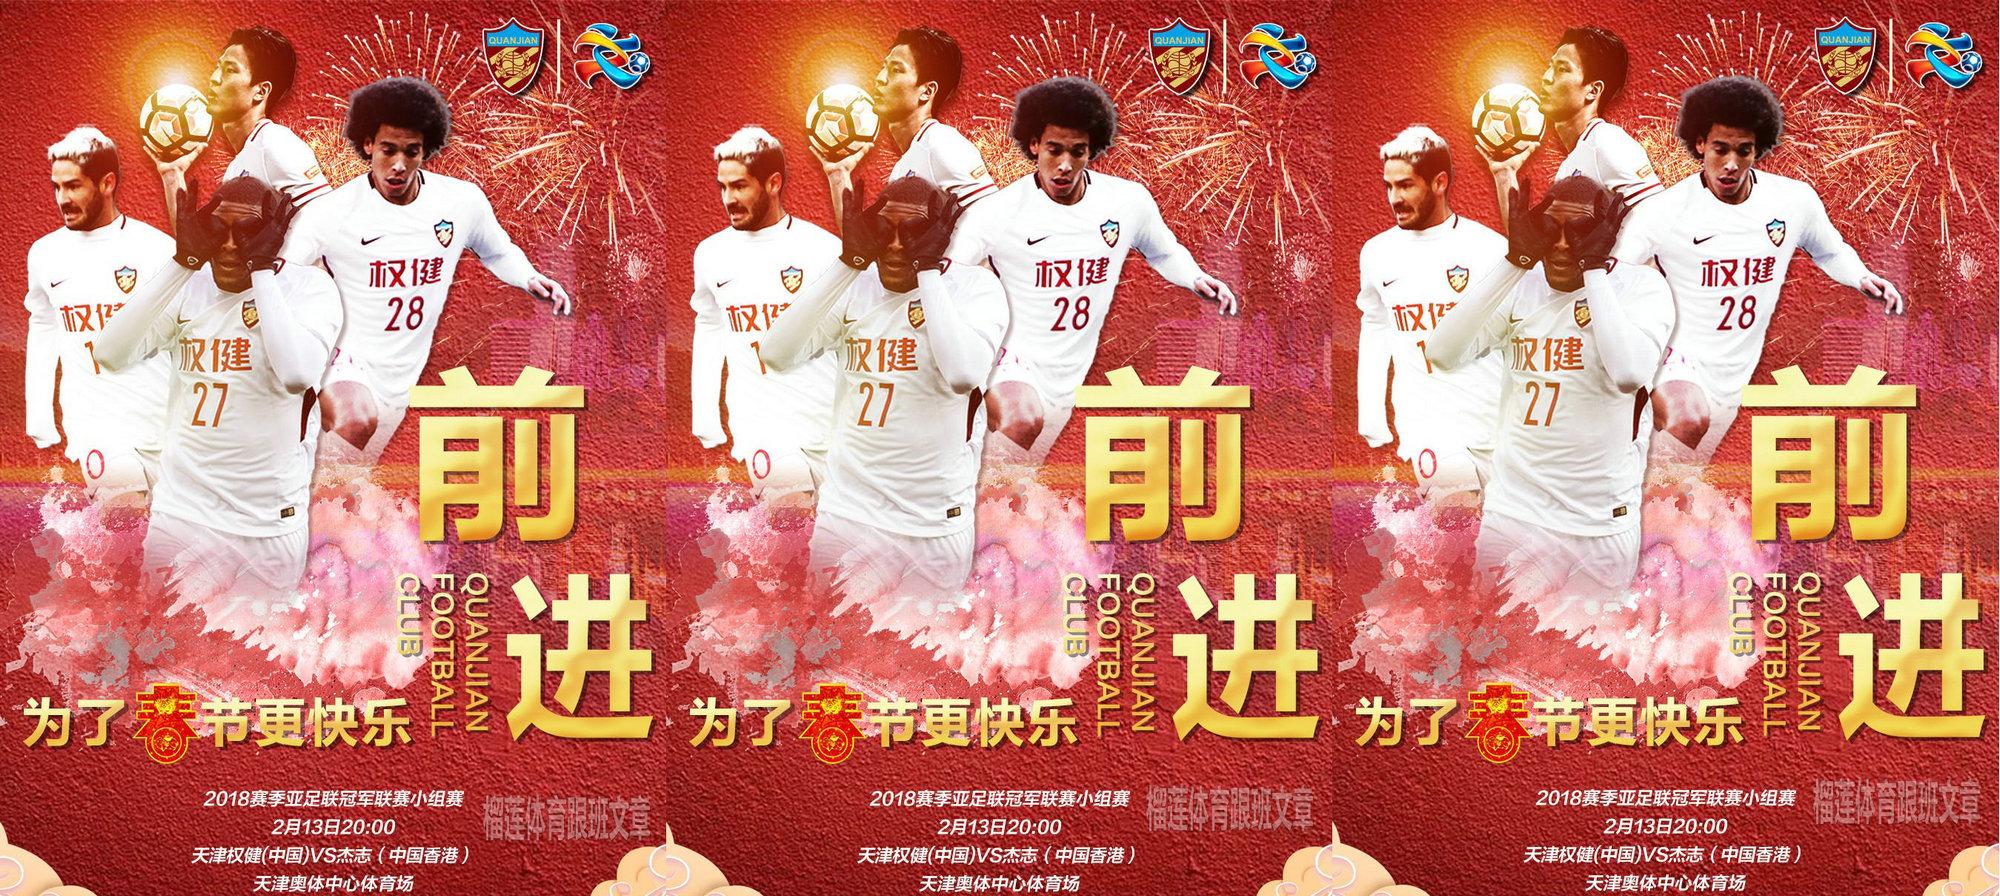 天津权健球迷吐槽球队海报太丑:太土,跟广州恒